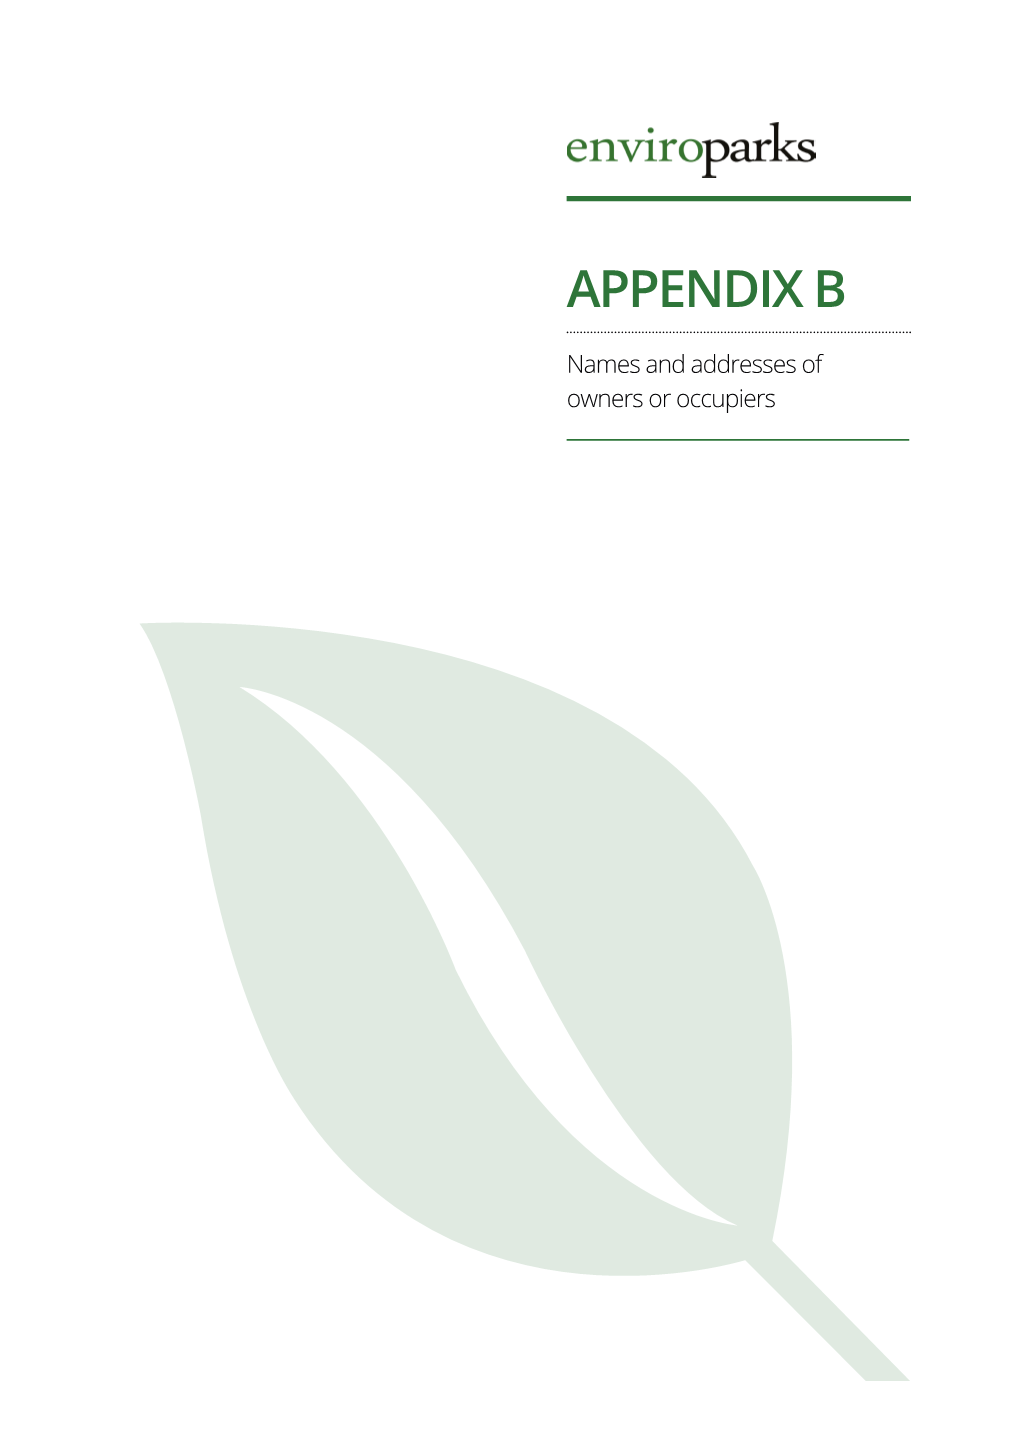 PAC Report Appendix B